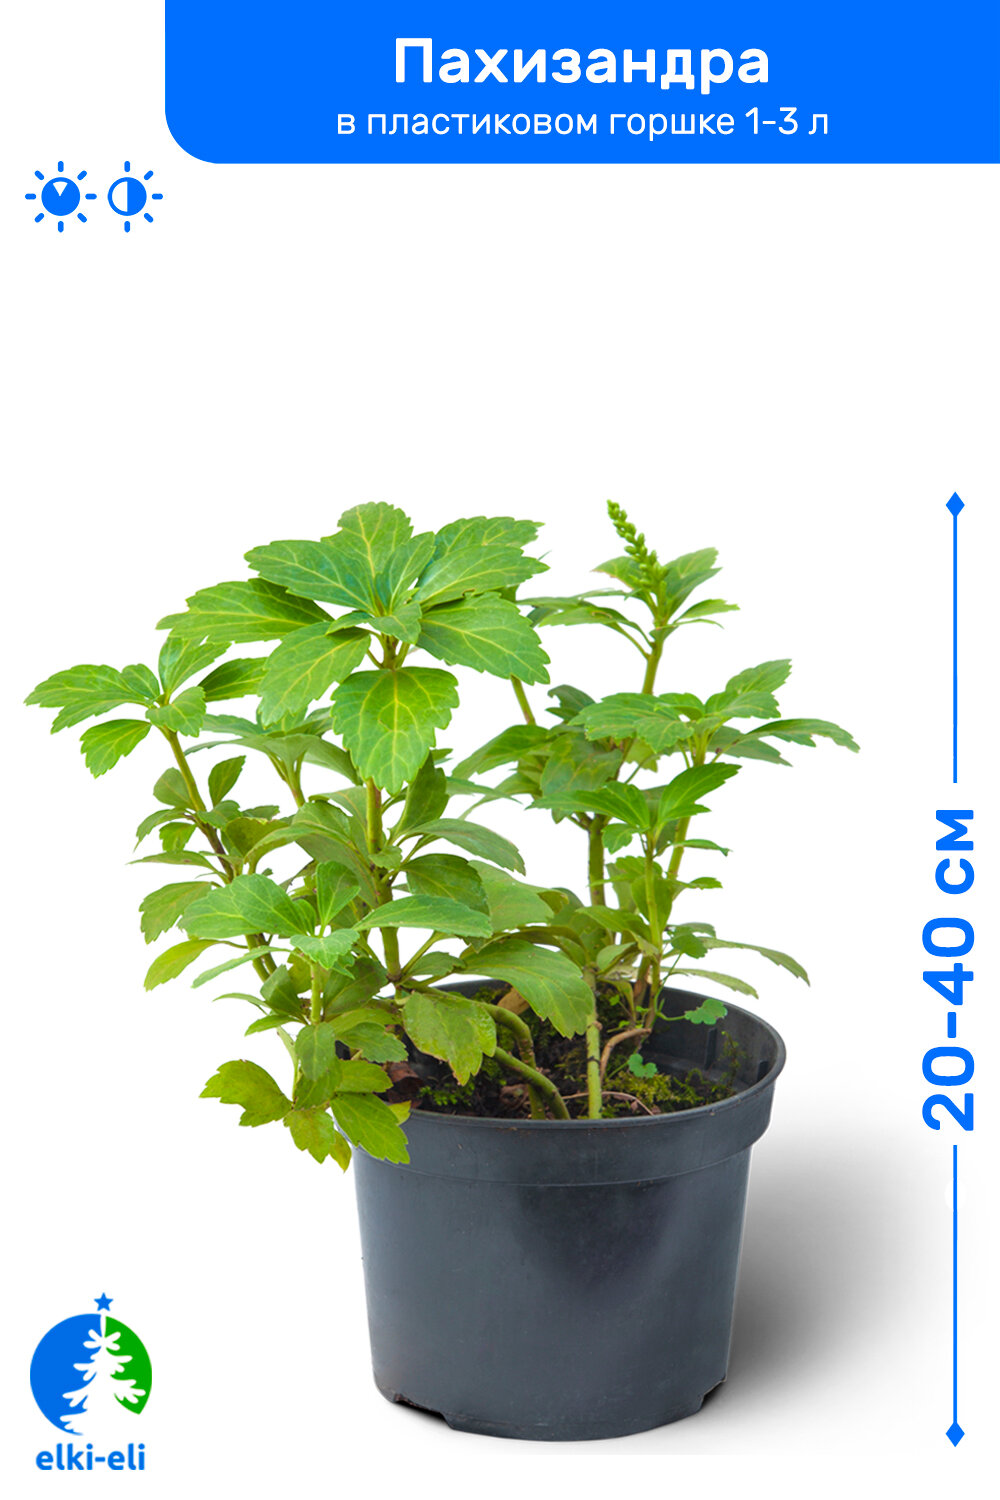 Пахизандра 20-40 в пластиковом горшке 1-3 л саженец лиственное живое растение